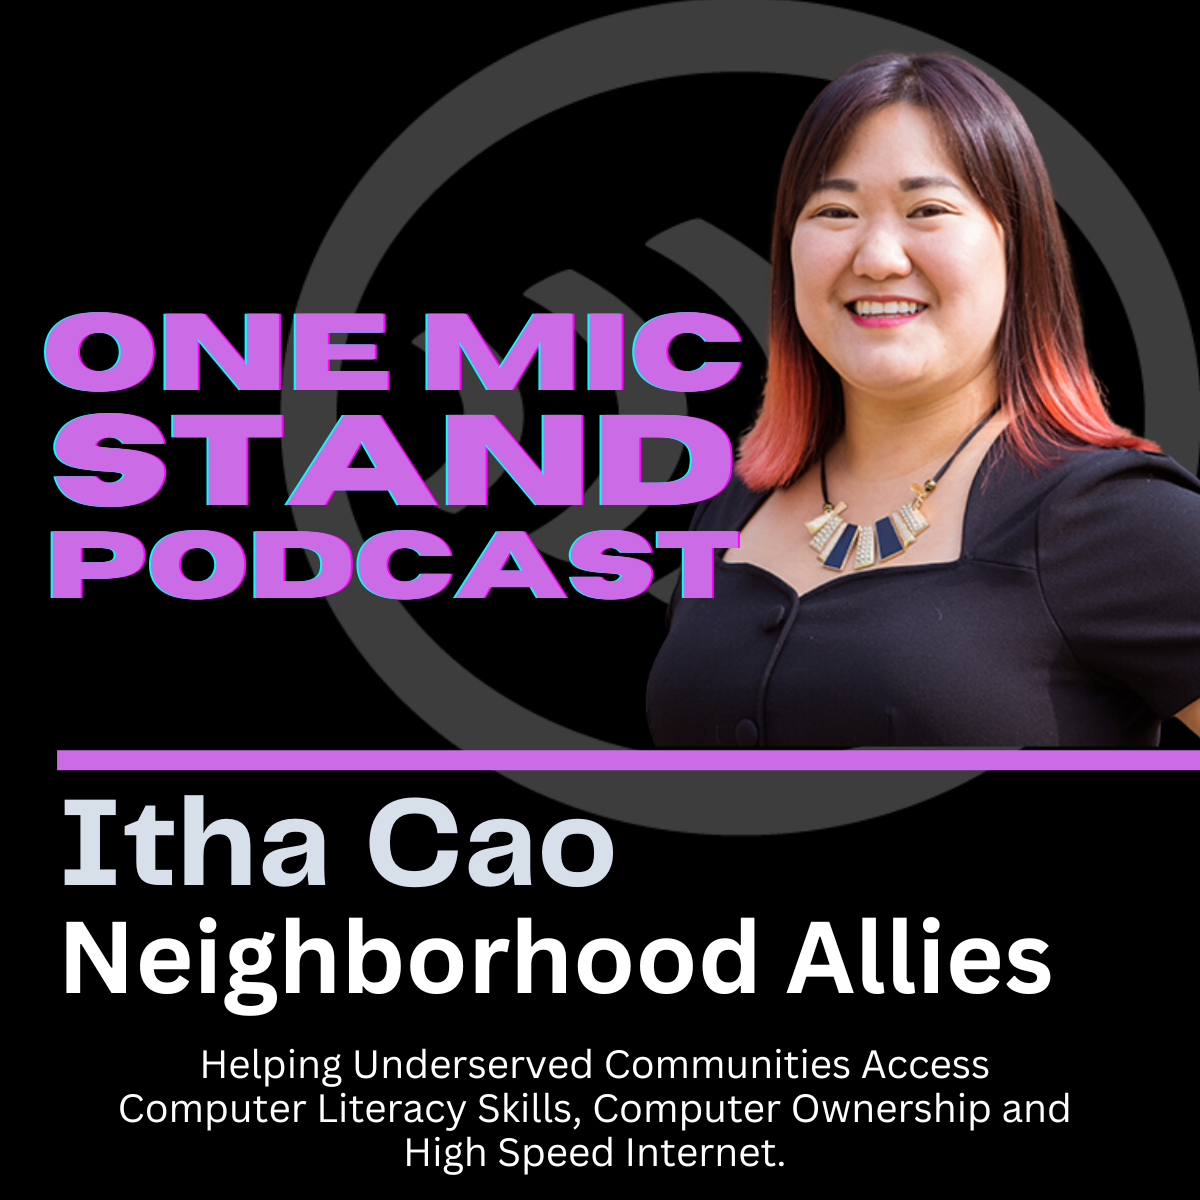 Itha Cao, Neighborhood Allies